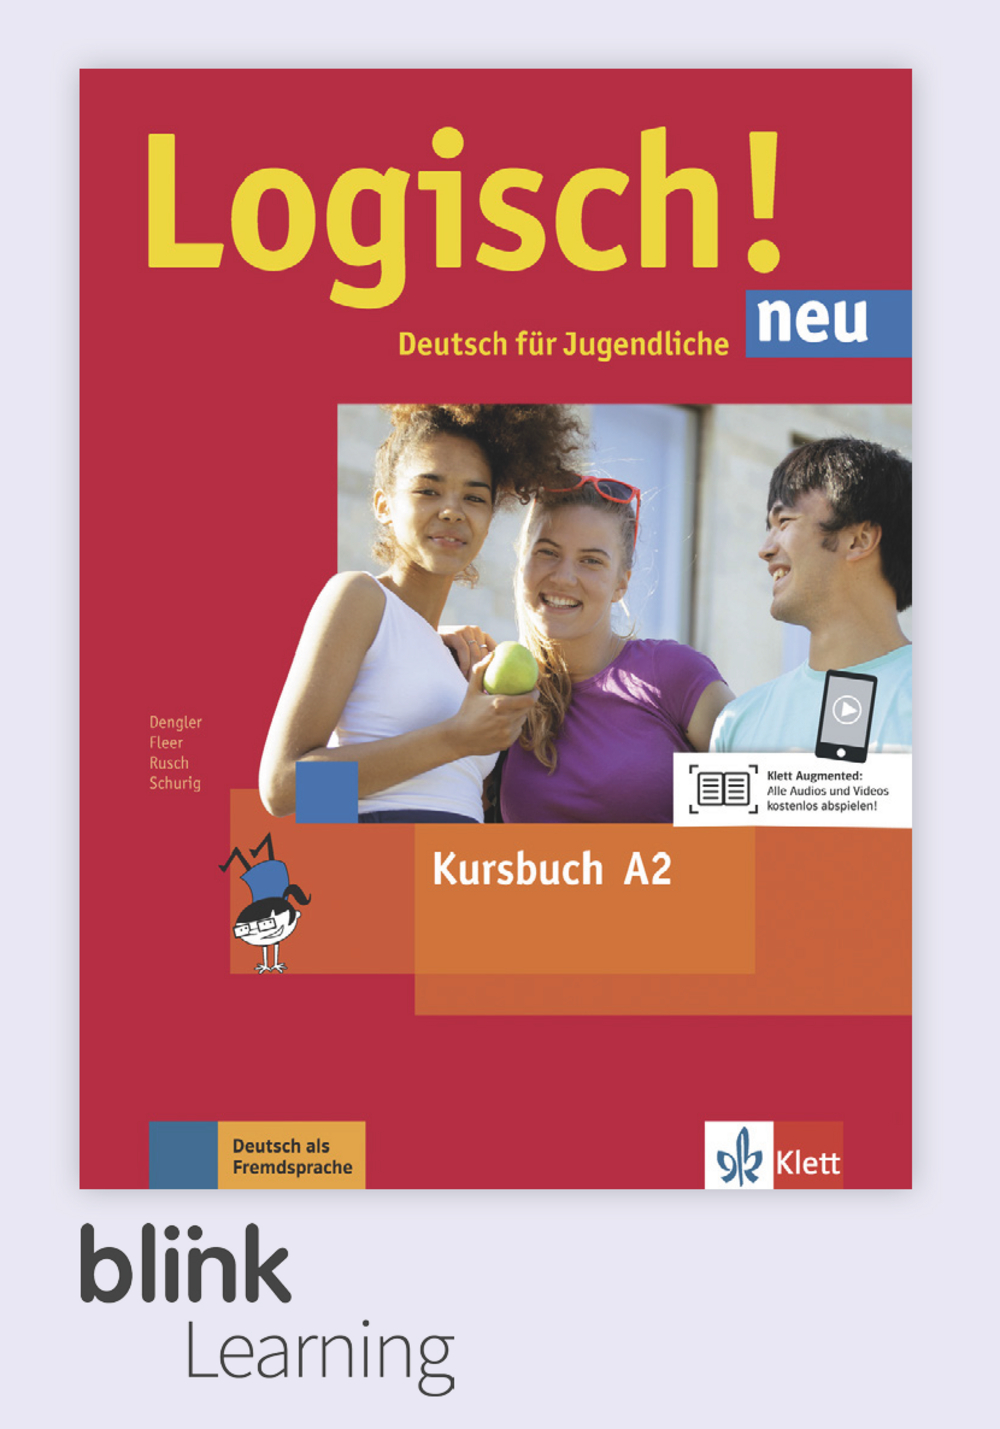 Logisch! neu A2 Digital Kursbuch fur Unterrichtende/ Цифровой учебник для учителя